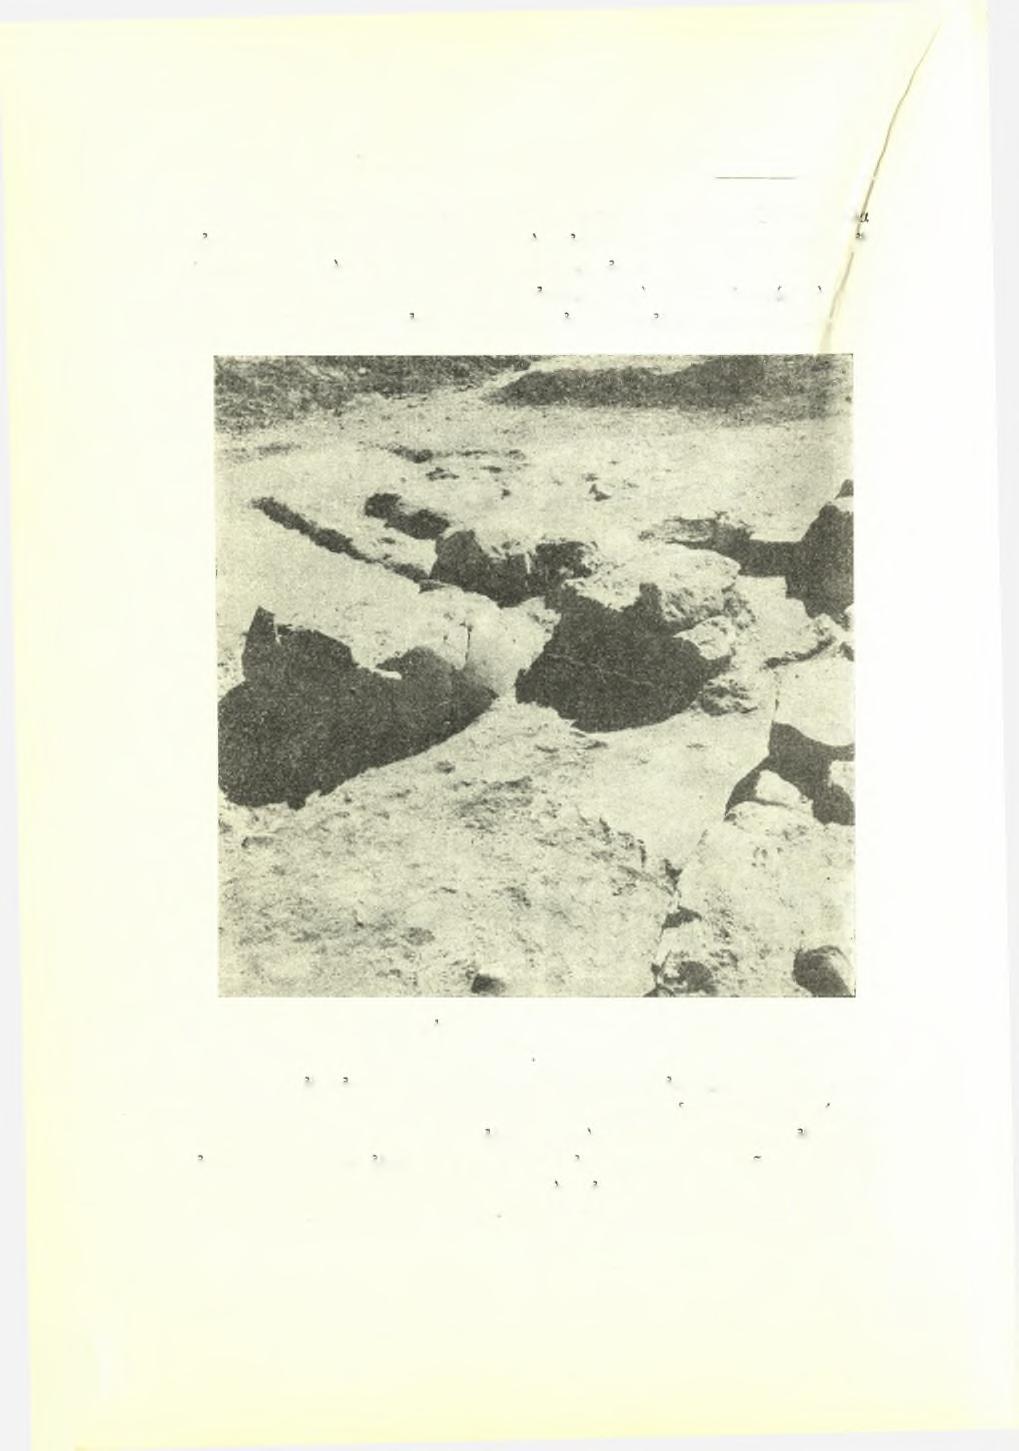 138 Πρακτικά τής Αρχαιολογικής Εταιρείας 1952 σασα άφοονώτατα κεραμεικά λείψανα, καί μερικώς μία όίλλη (Β)' δύο άλλ οικήματα (Γ καί Δ), κείμενα παρά την οικίαν Α, ήρευνήοησαν μόνον,εξ έπιπολής, διά